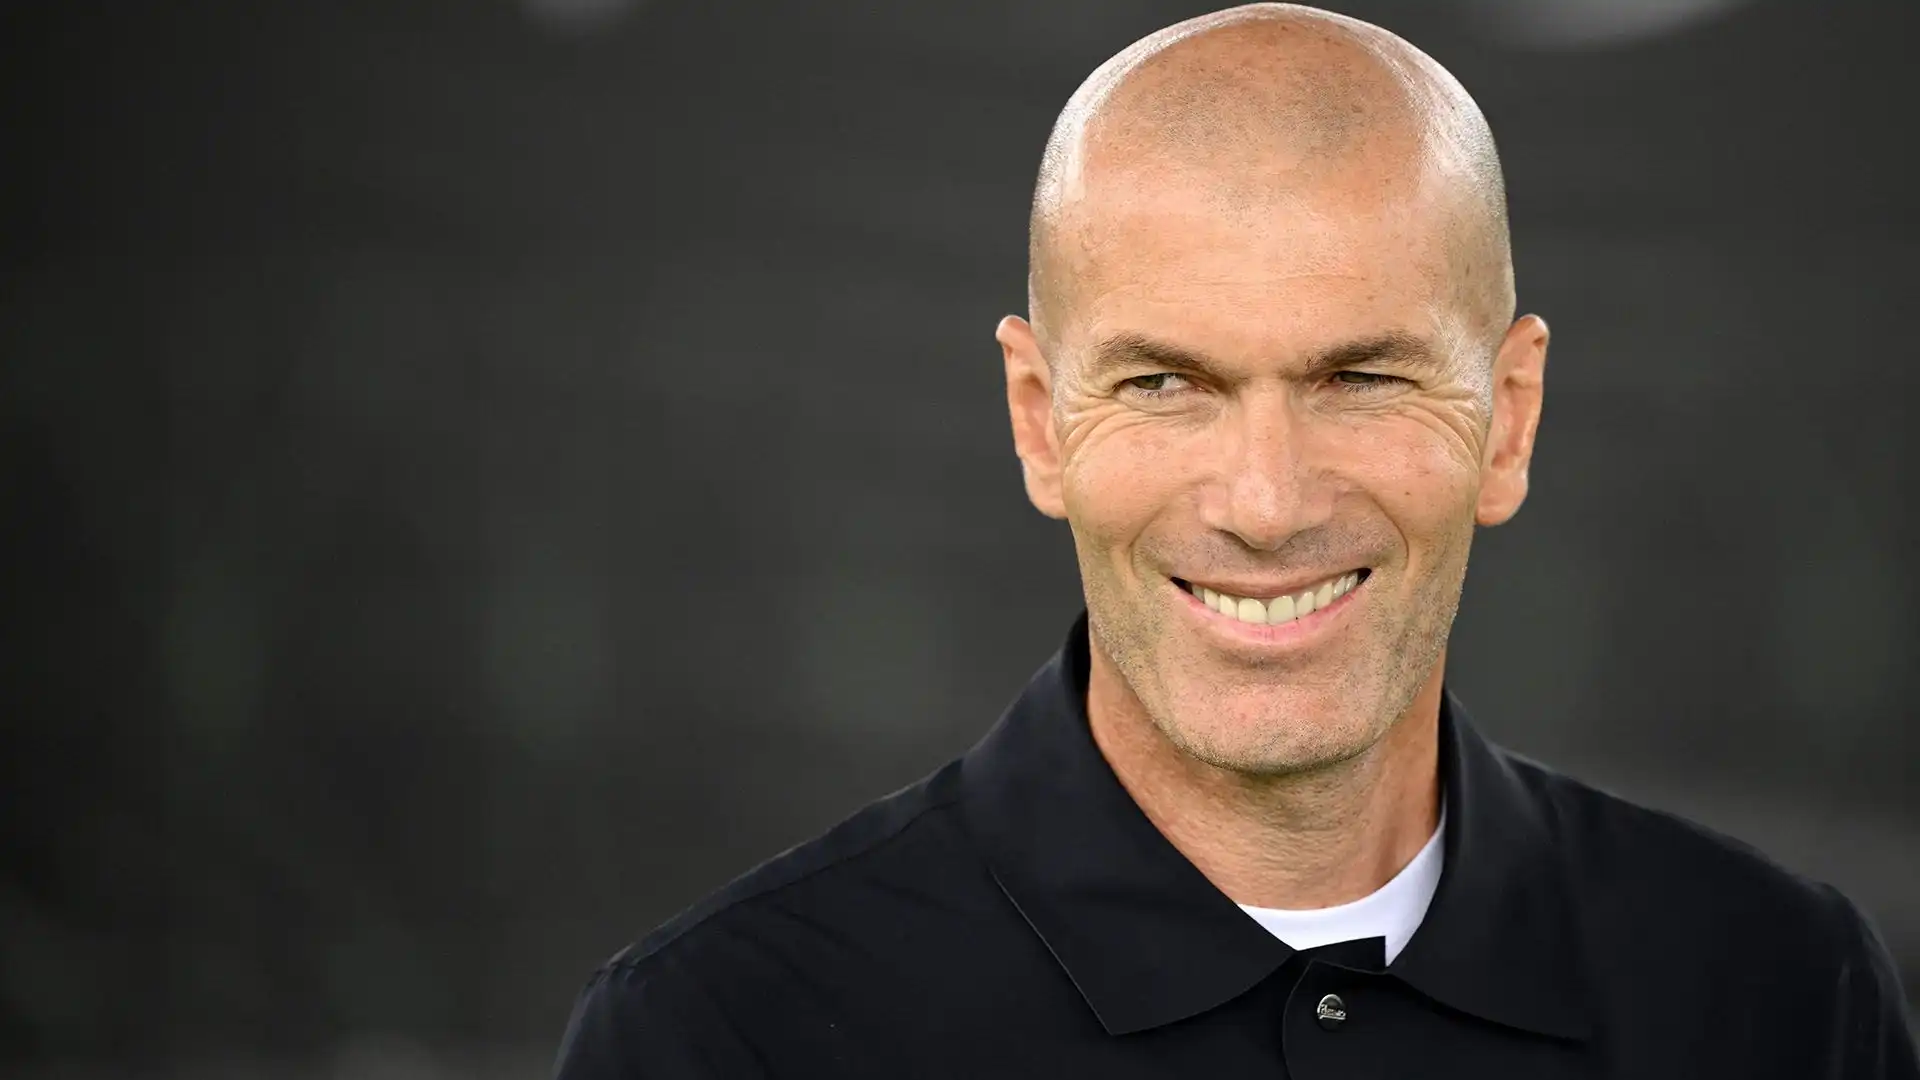 Oltre a Xabi Alonso, Zinedine Zidane è l'altro nome forte nella lista di candidati alla successione di Thomas Tuchel